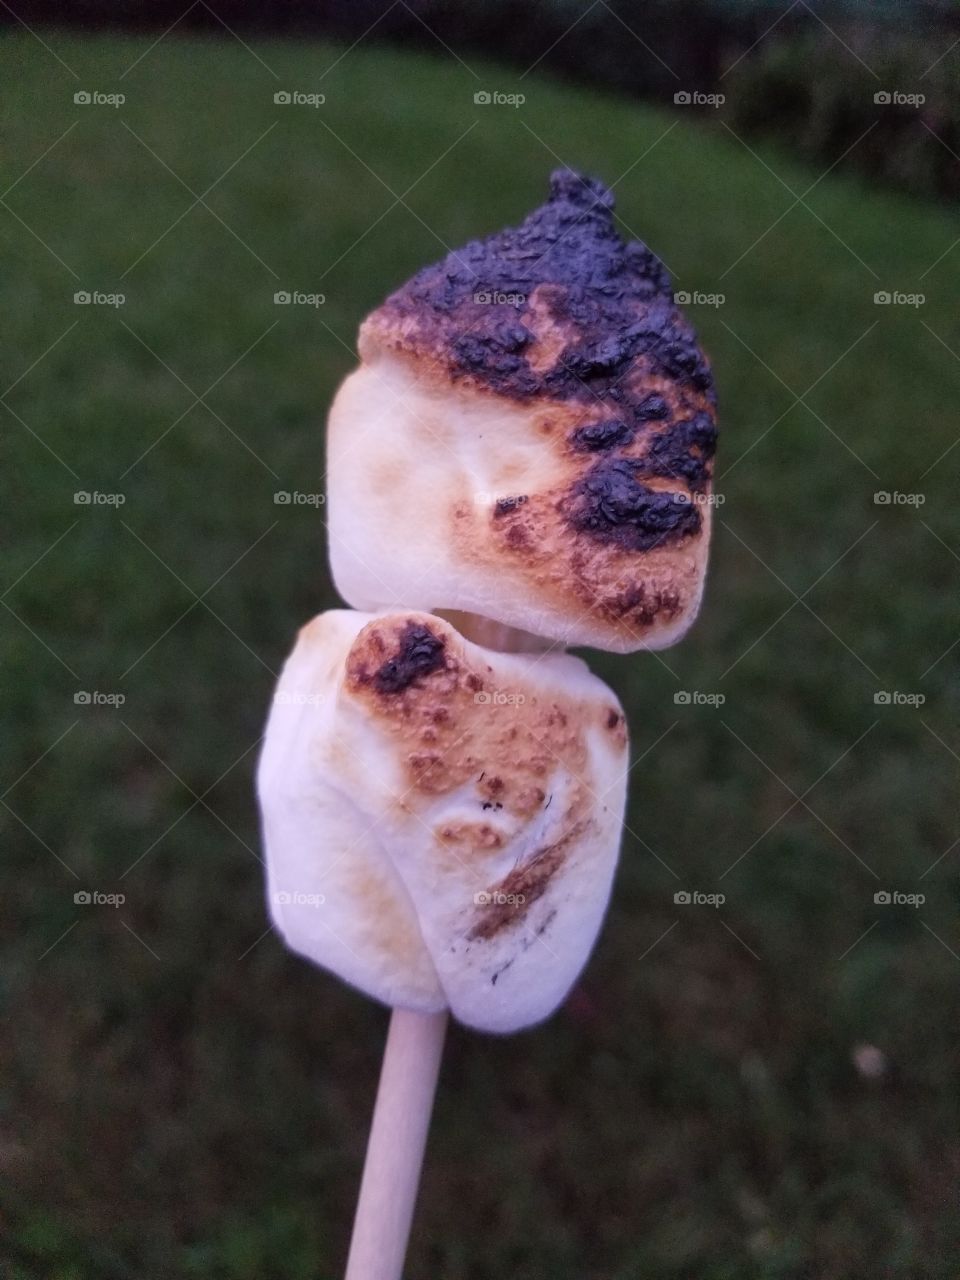 Toasted marshmallows